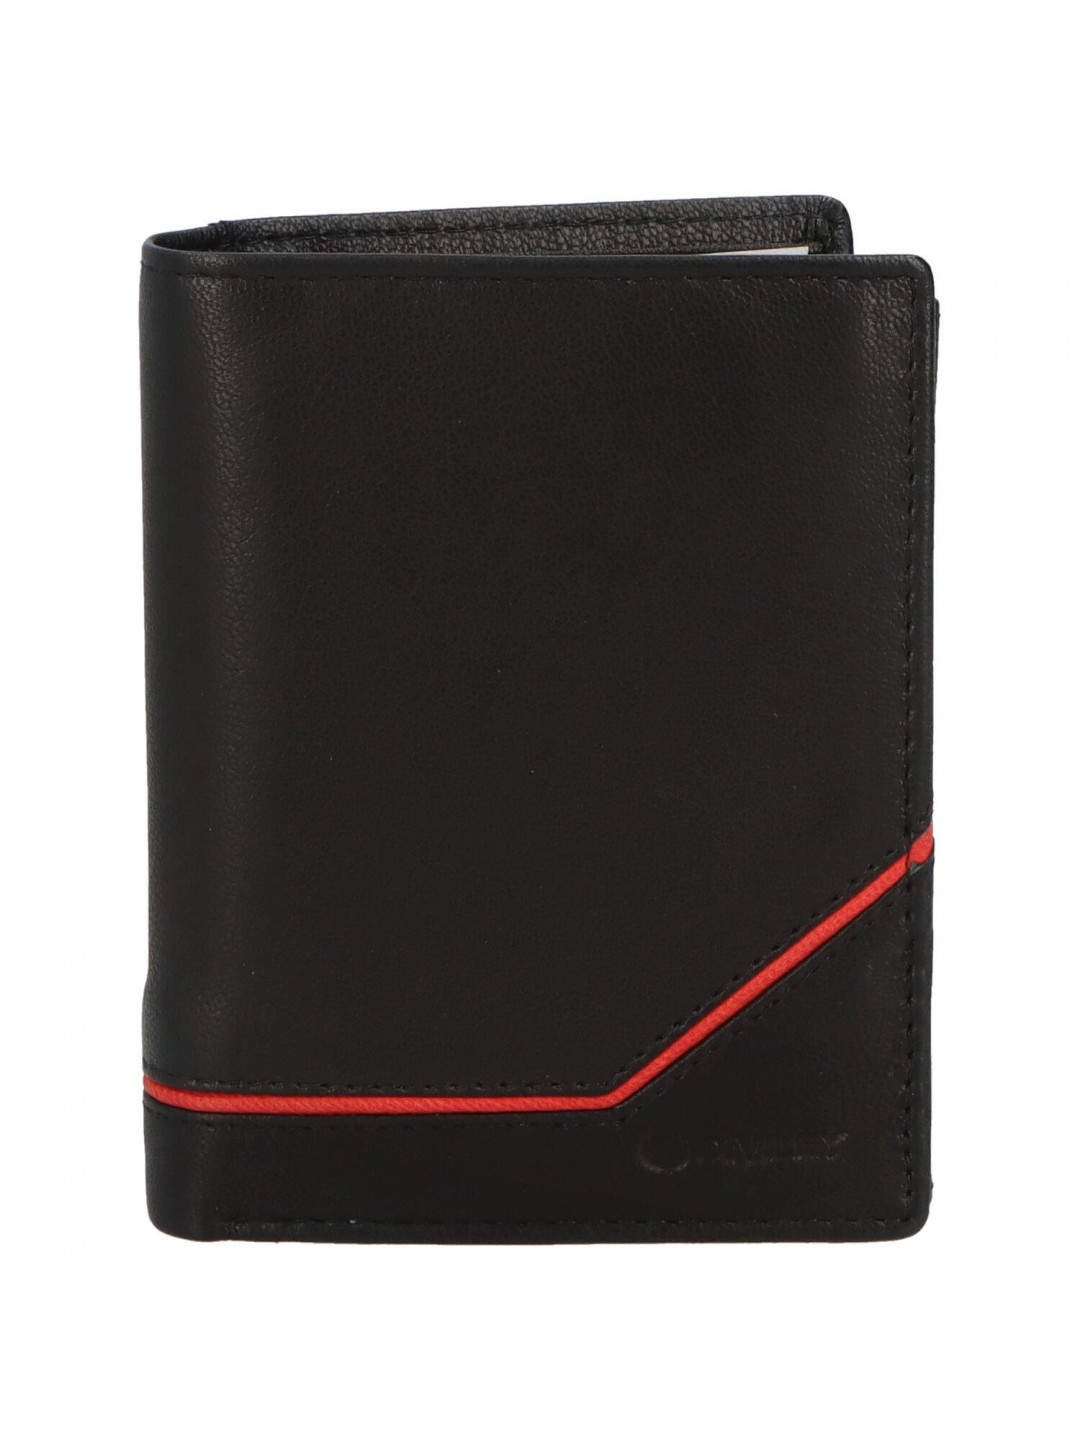 Trendová pánská kožená peněženka Gvuk černá – červená